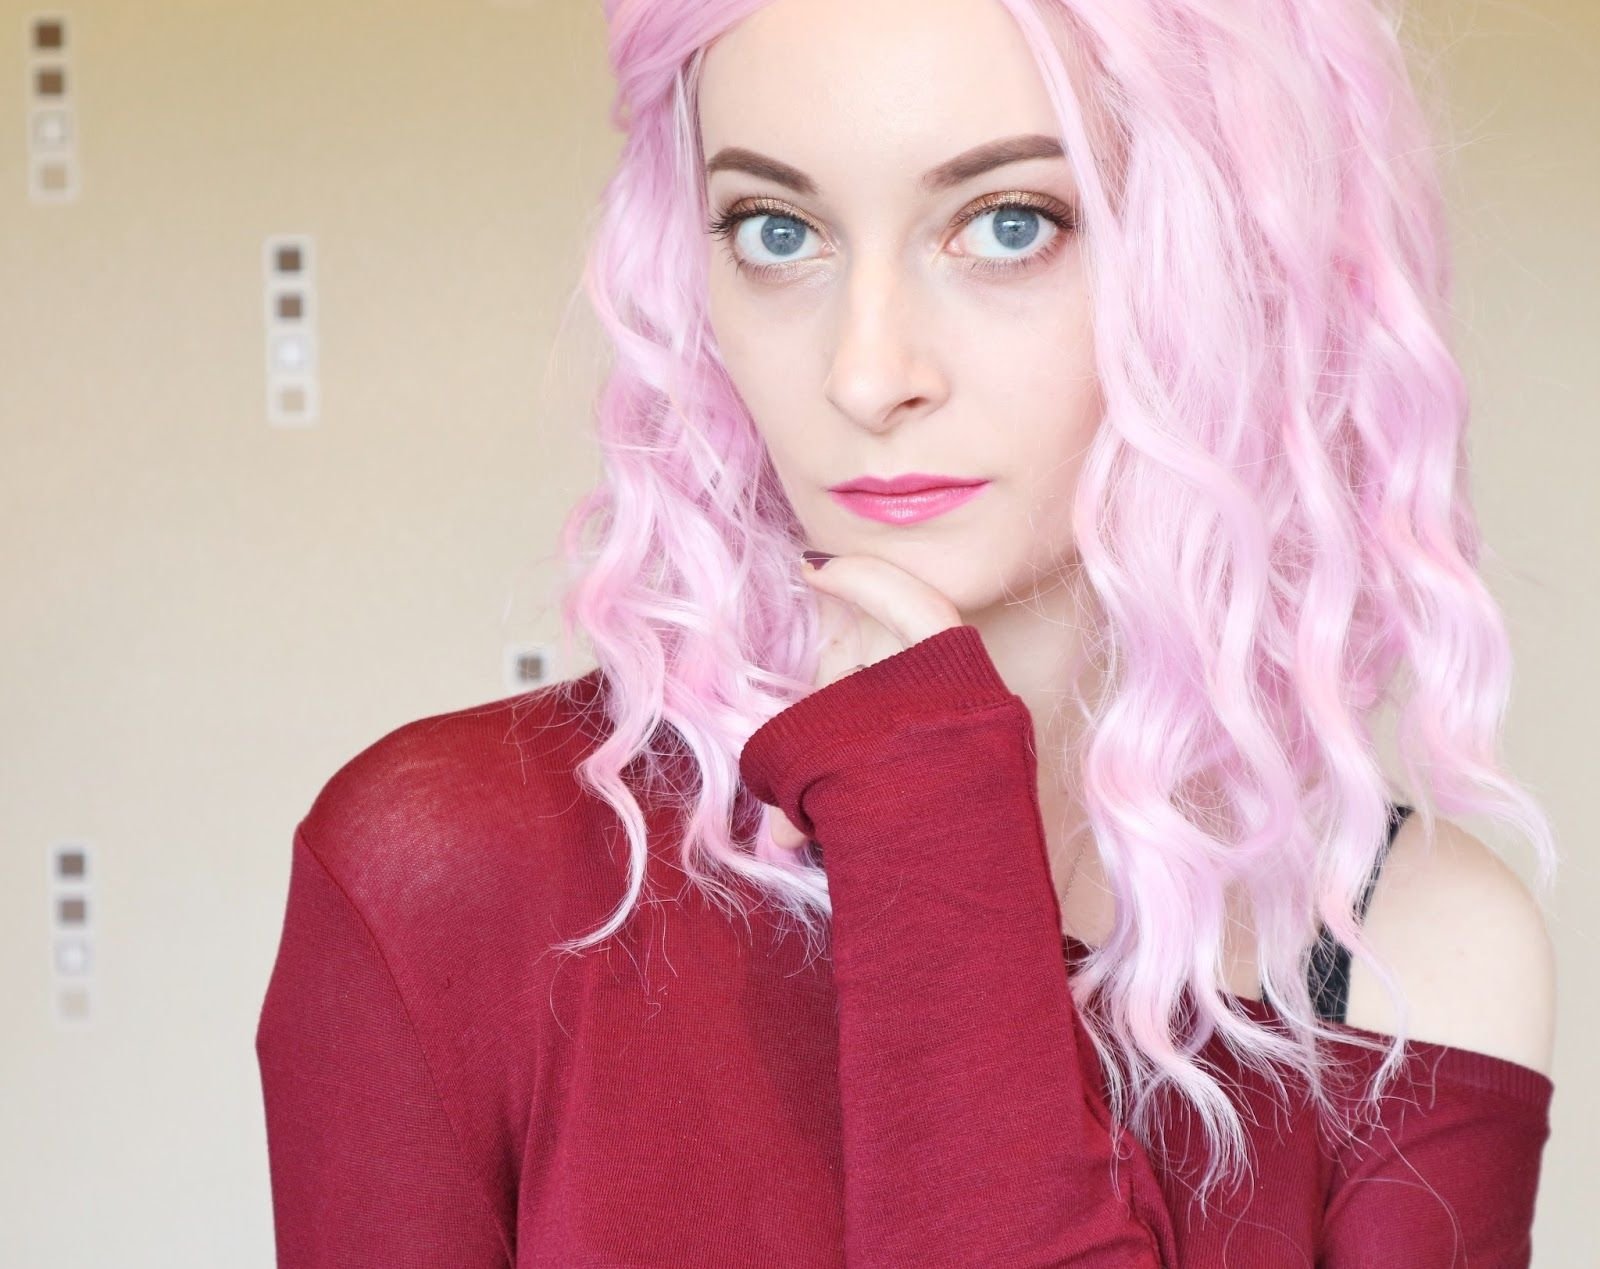 Гг с розовыми волосами. Розовые волосы. Знаменитости с розовыми волосами. Блогеры с розовыми волосами. Образ с розовыми волосами.